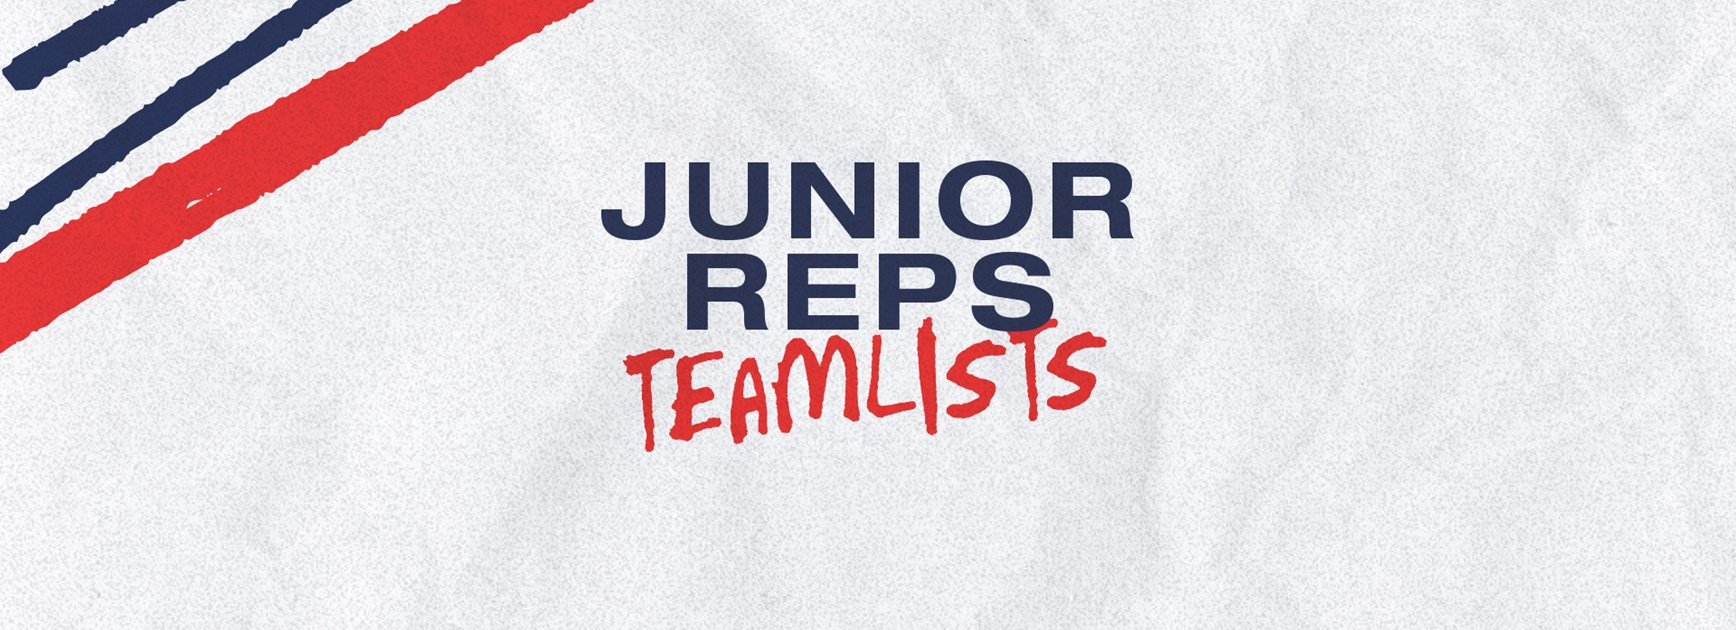 Junior Representative Teamlists for Round 7 Announced